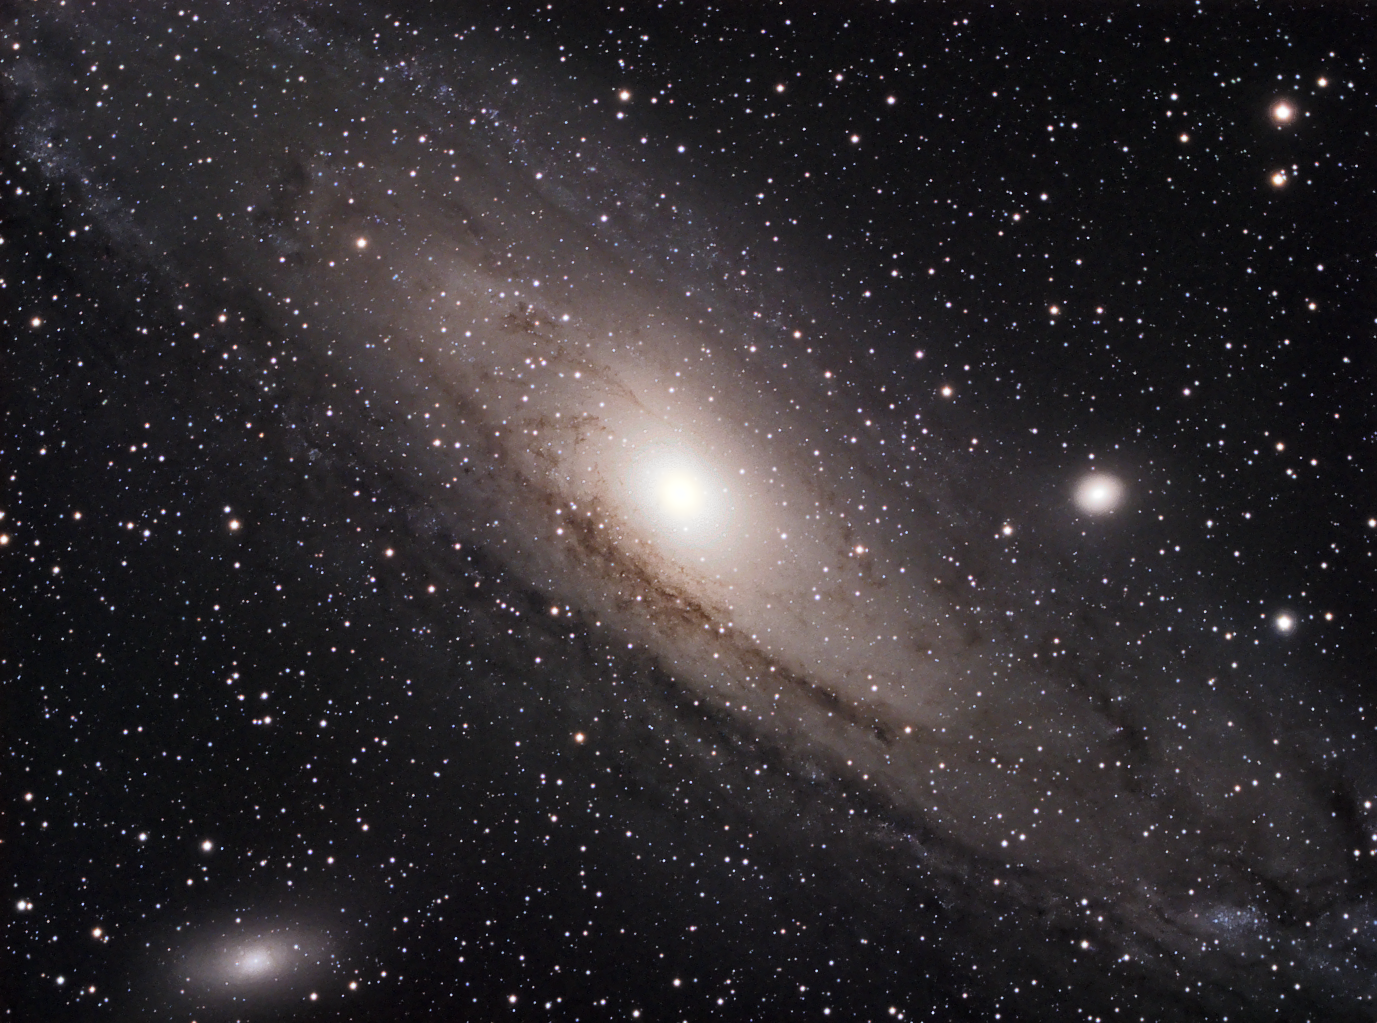 Messier 31 - Galaxia Espiral en Andrómeda. Crédito: Gustavo Sánchez/Captando el Cosmos